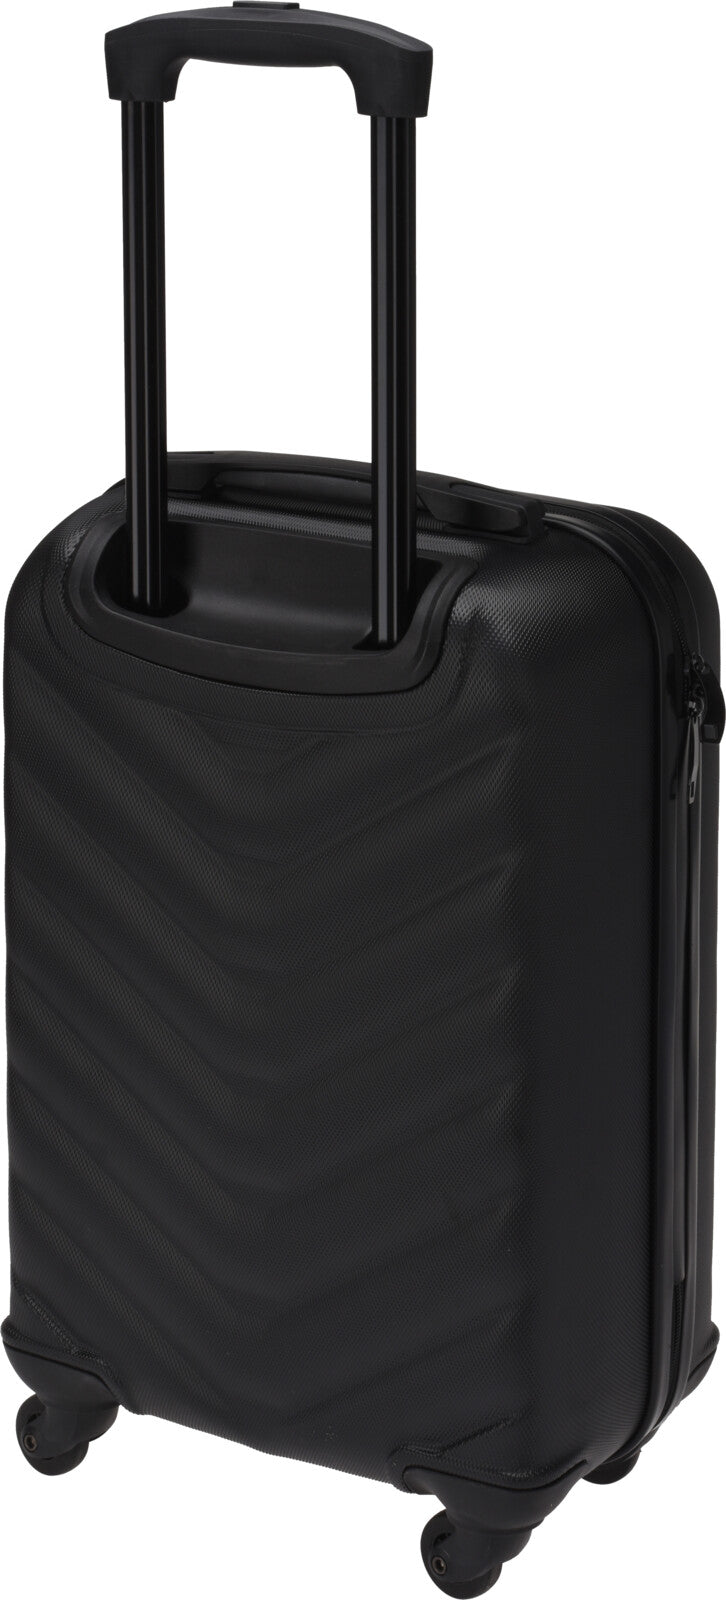 Kuffert sort, 28 liter